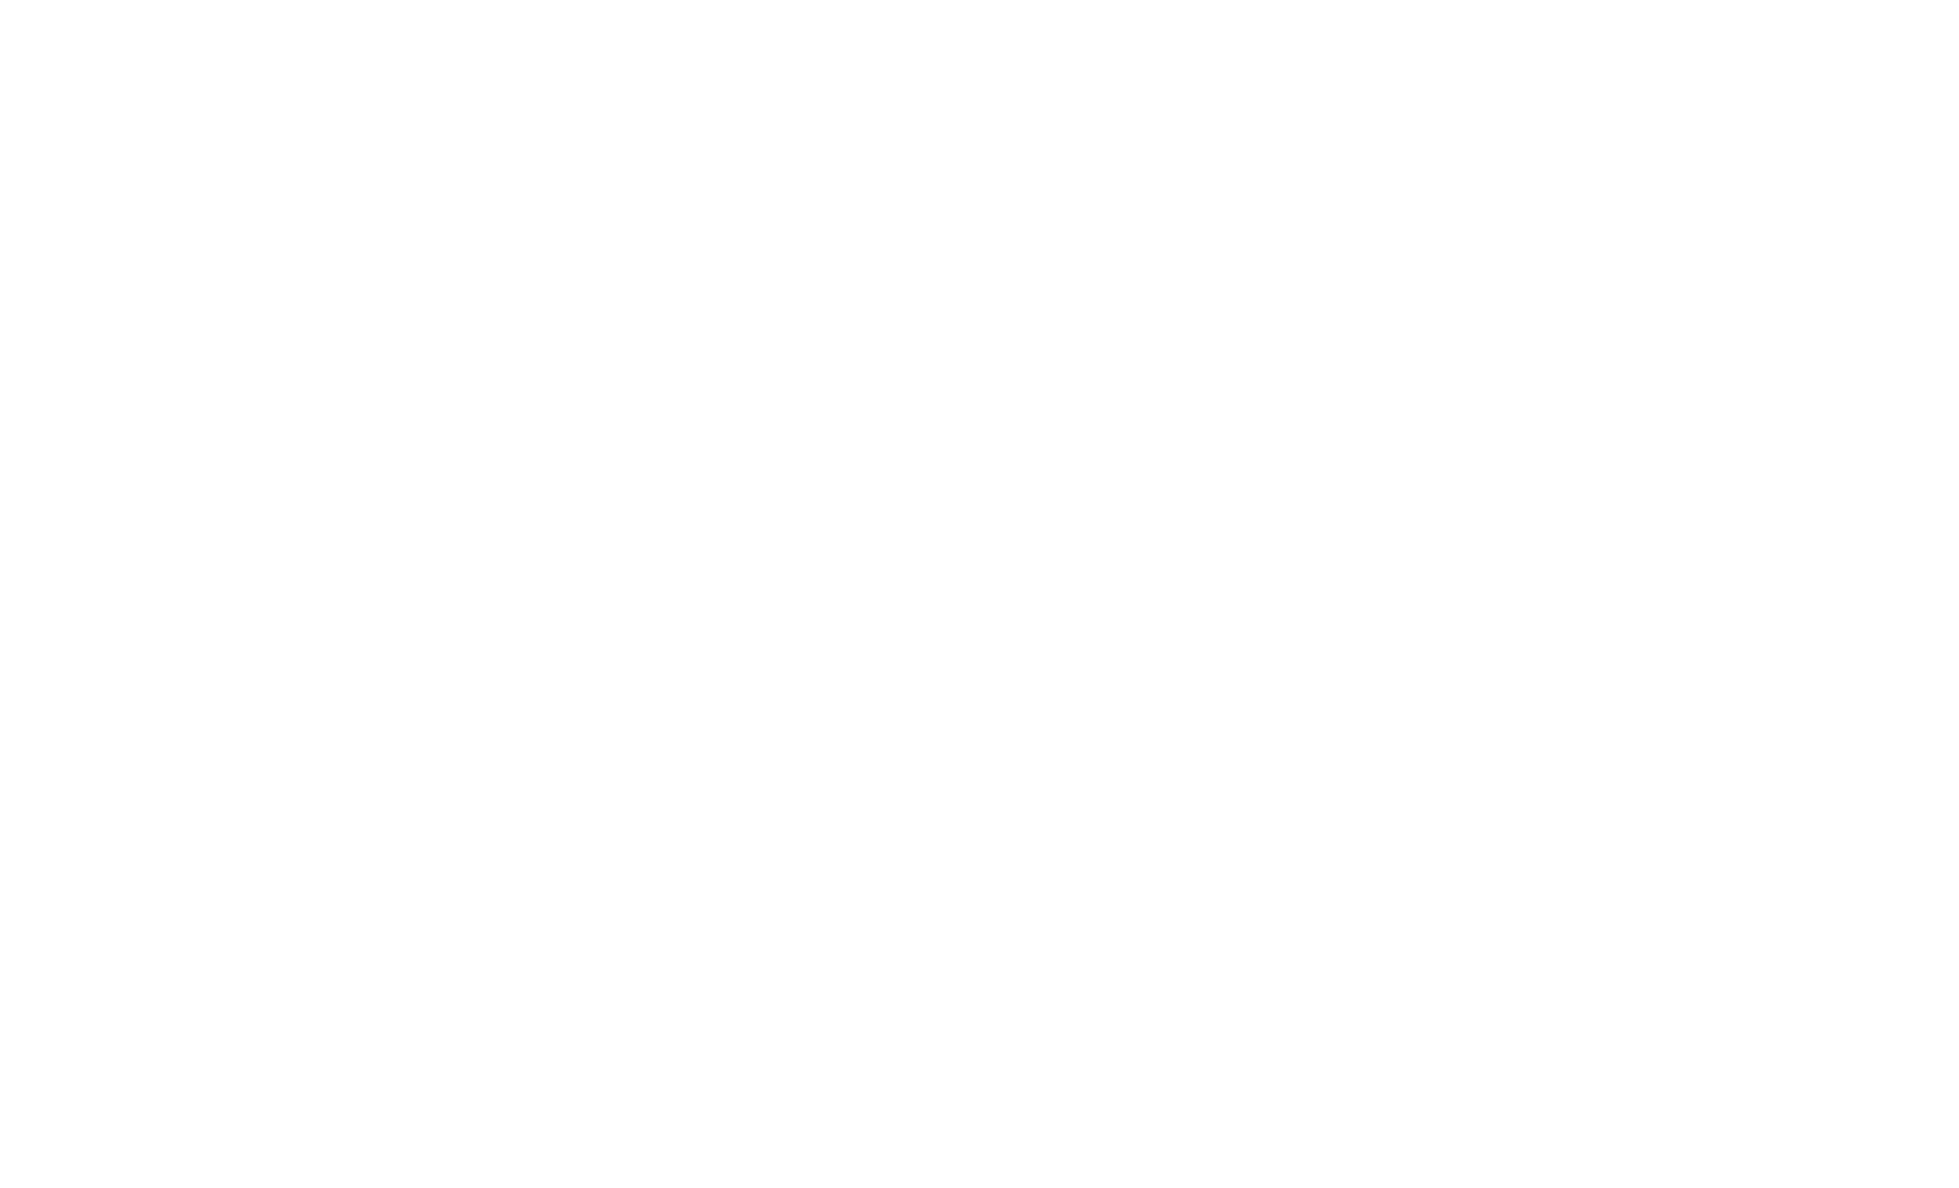 Discordian Design